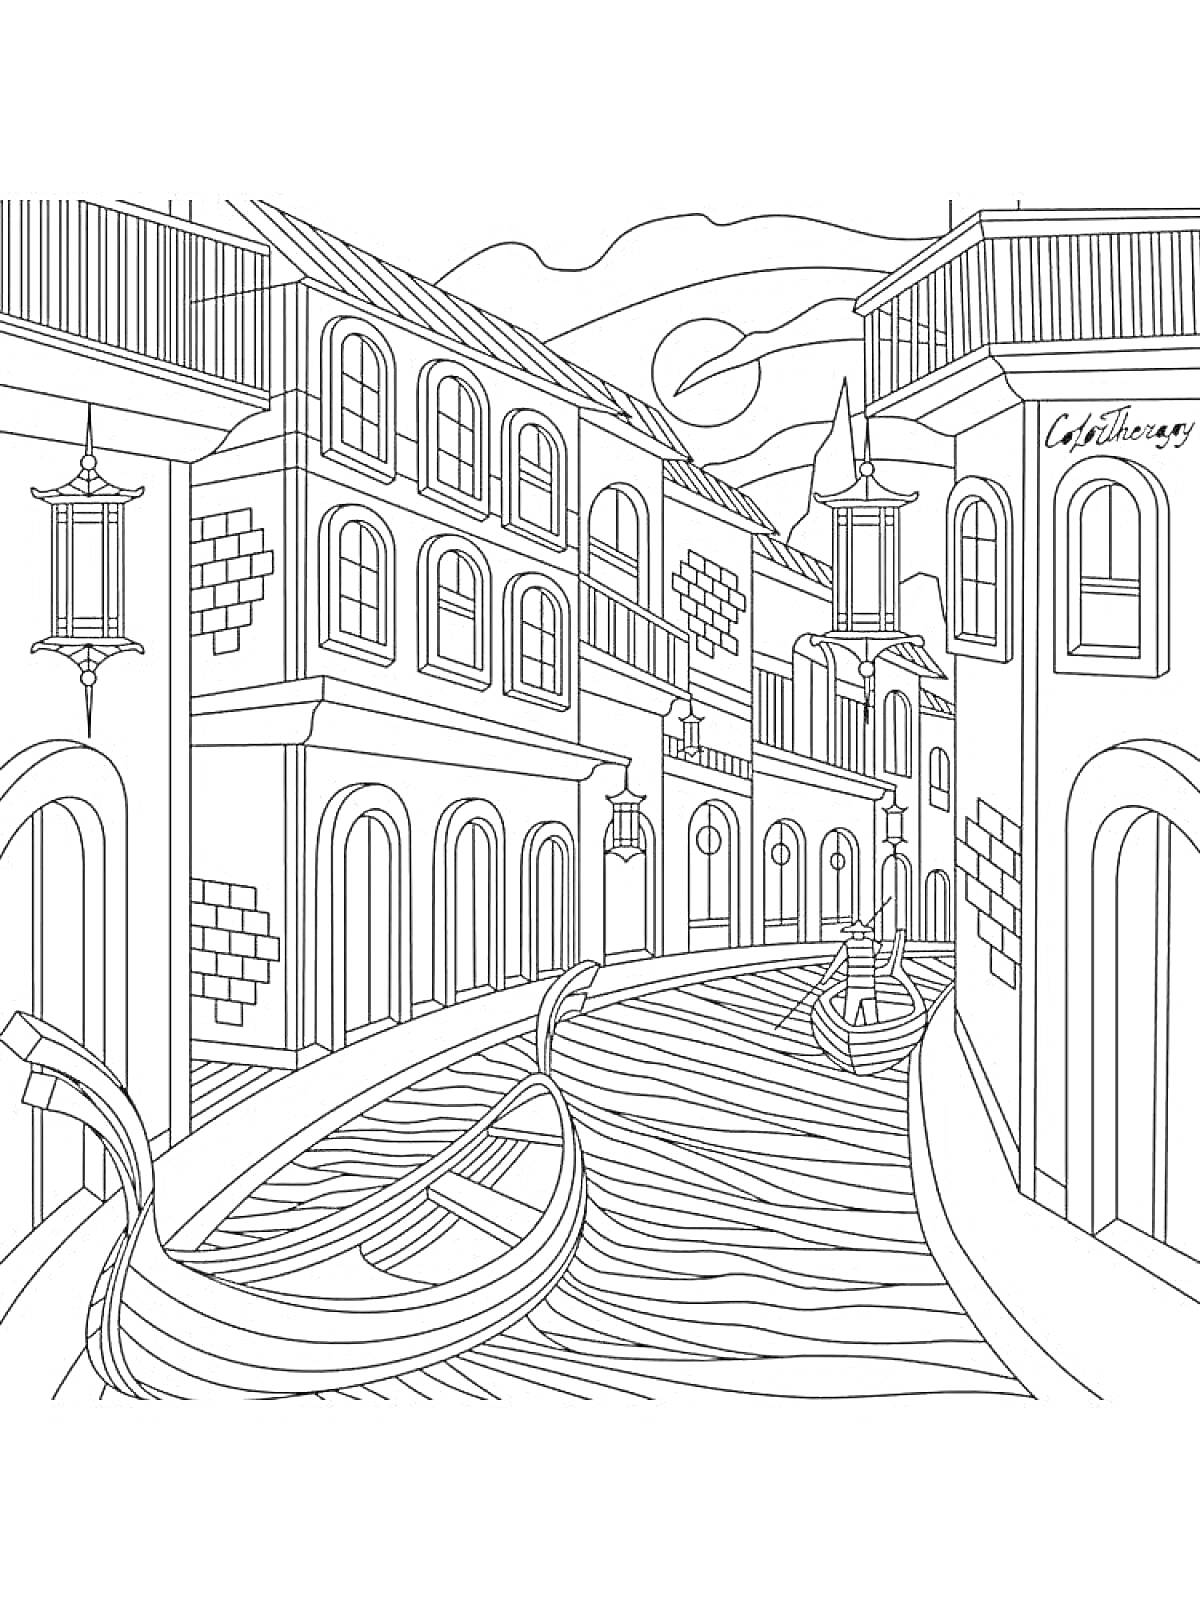 Раскраска Городской пейзаж с каналом, гондолой, фонарями, зданиями с арочными окнами и балконами